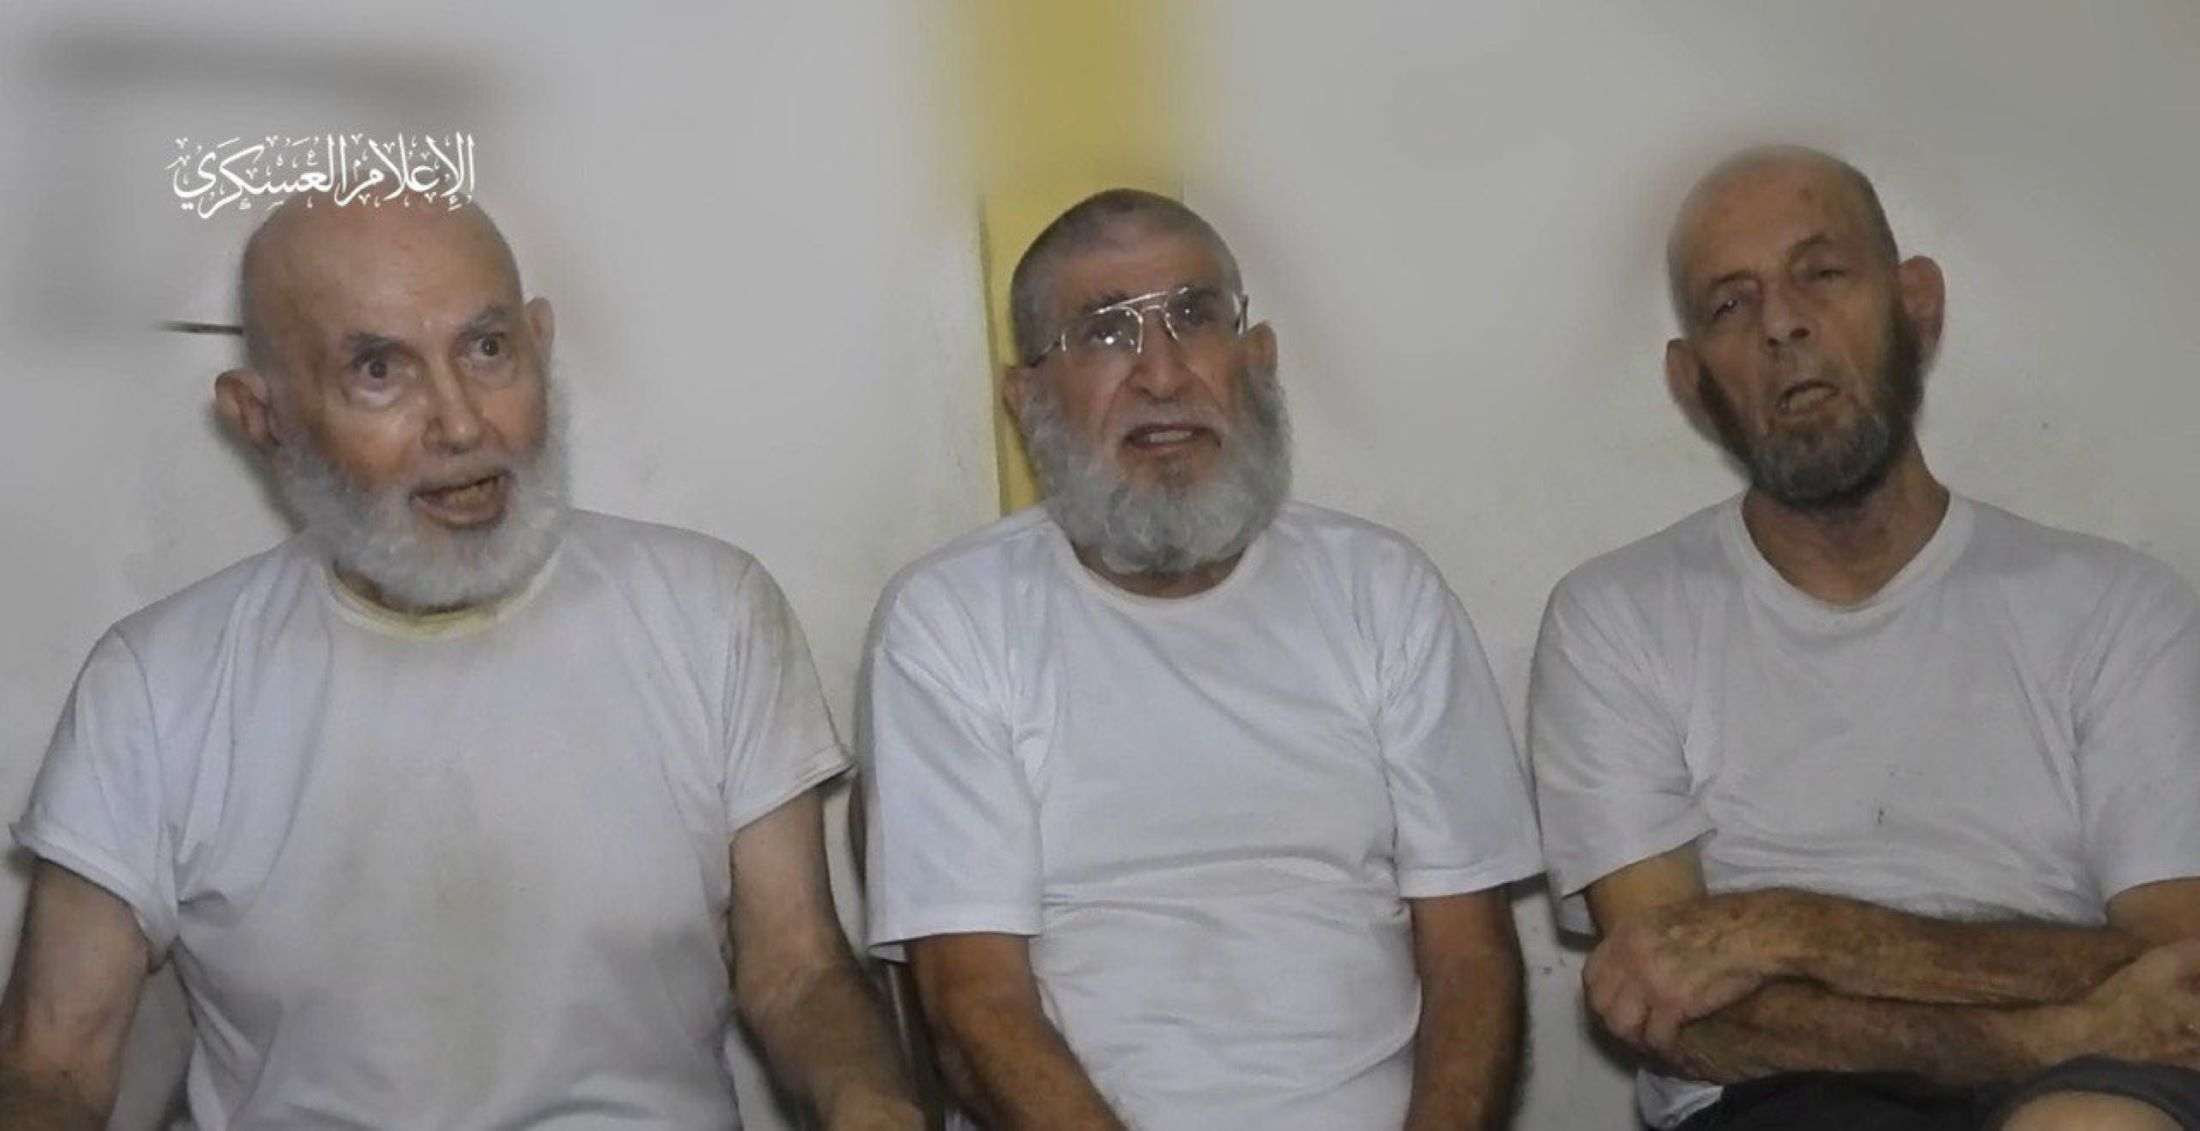 Hamás publica un vídeo de tres rehenes que piden ser liberados "sin importar el precio"